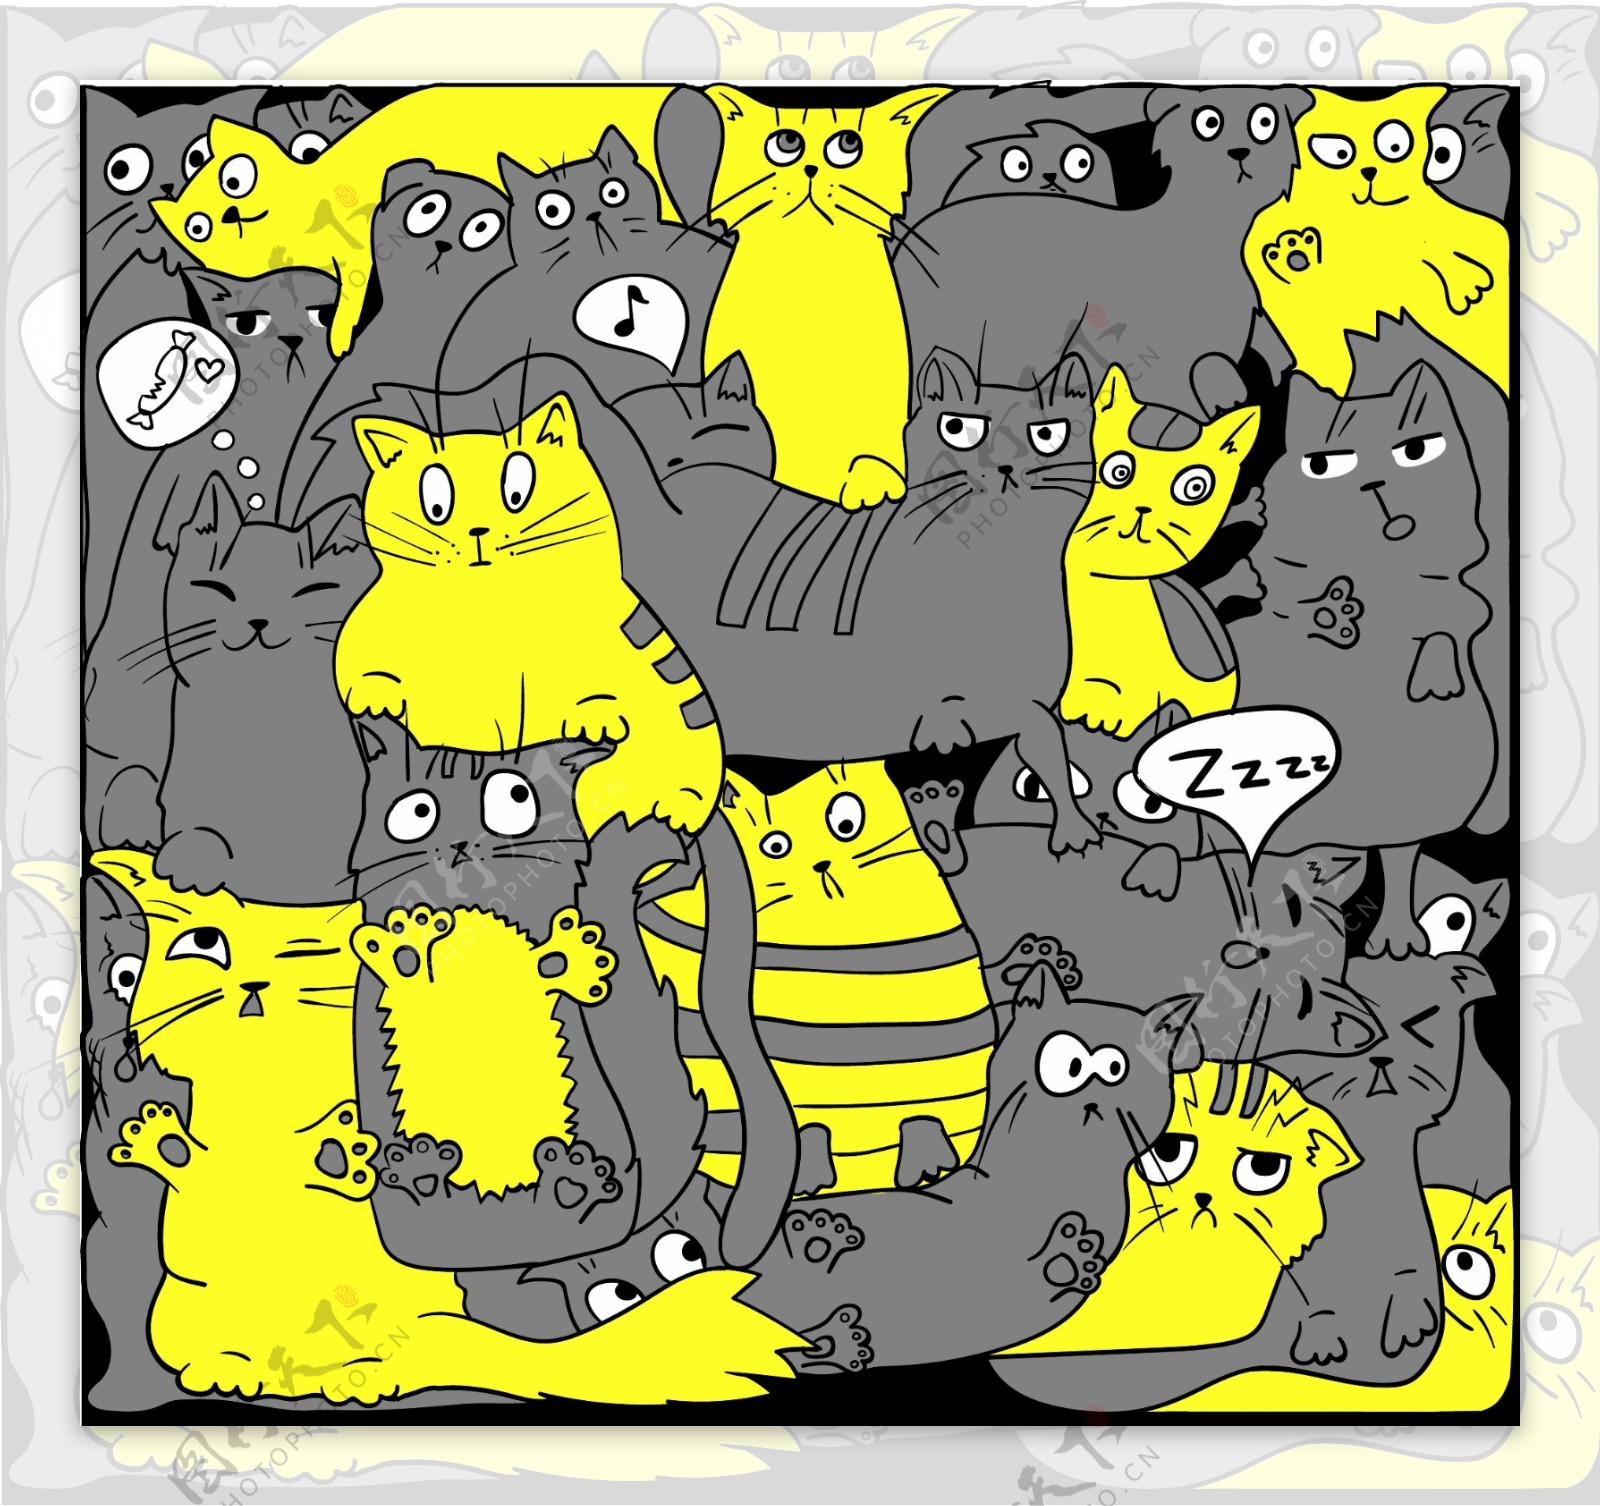 有趣的手绘猫咪插画矢量素材下载